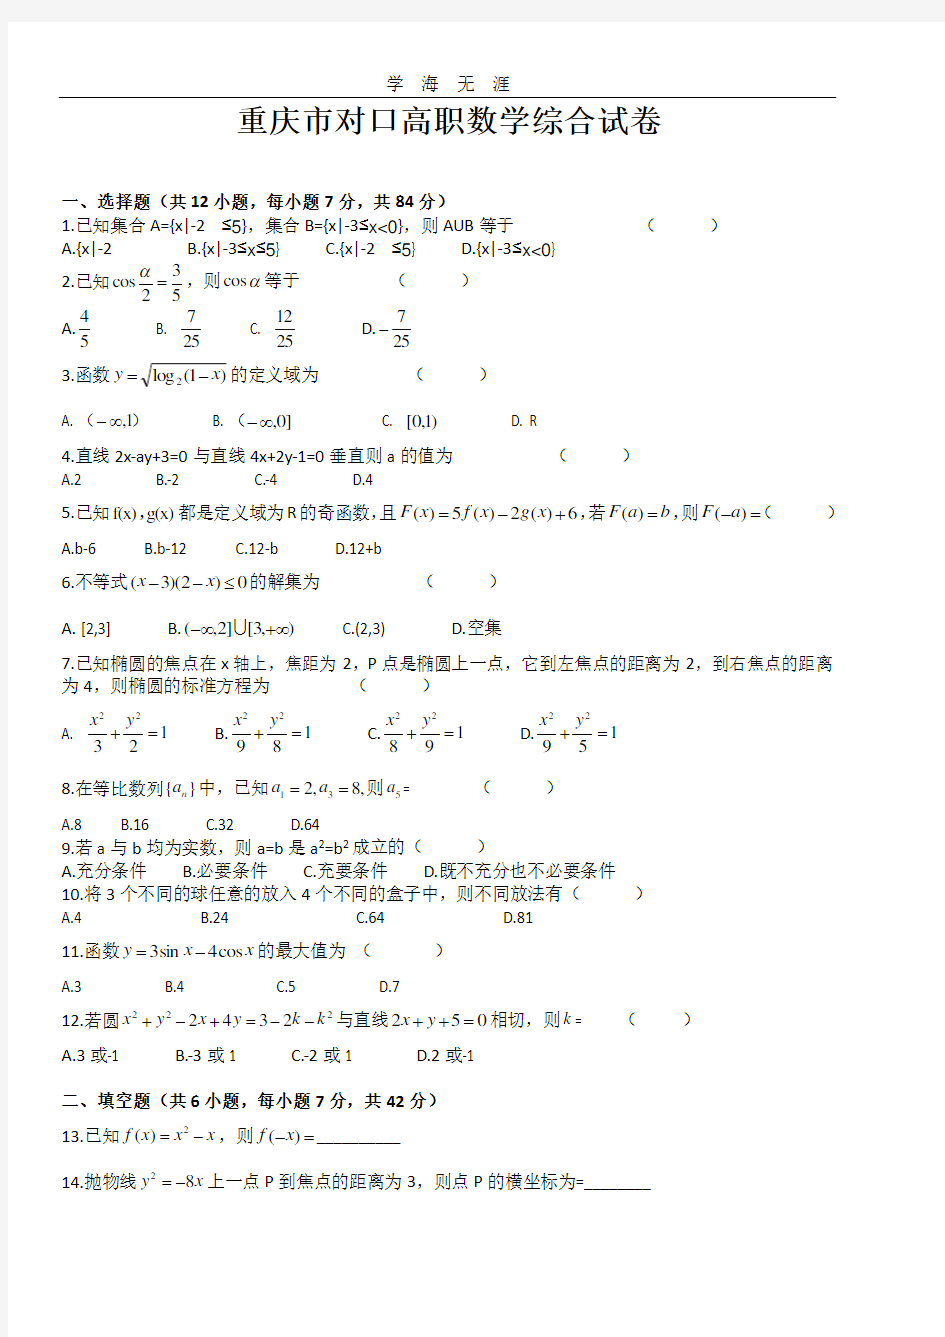 2016重庆市对口高职高考数学模拟试卷.pdf